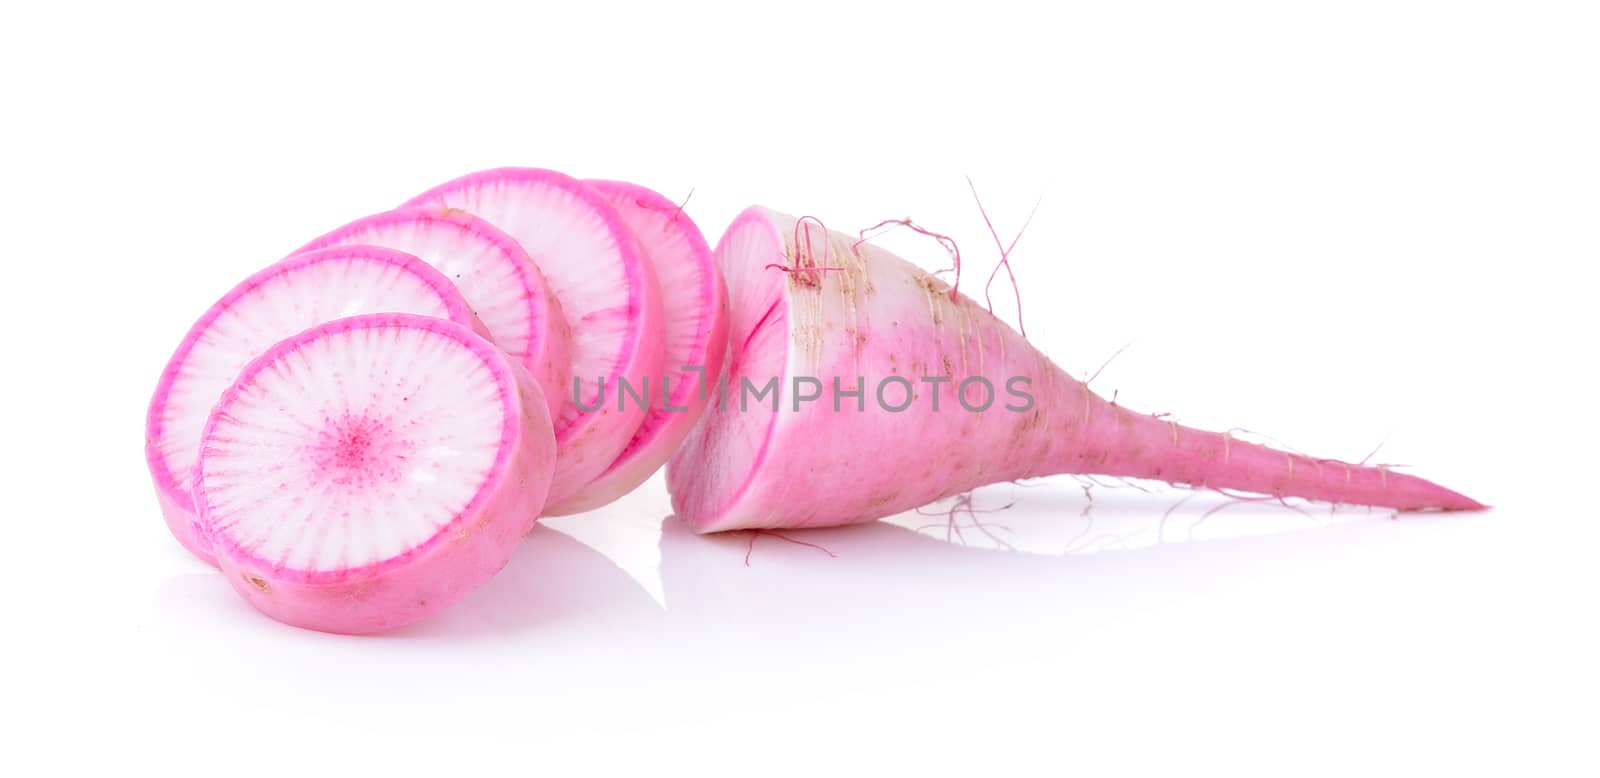 slice radishes isolated on white background